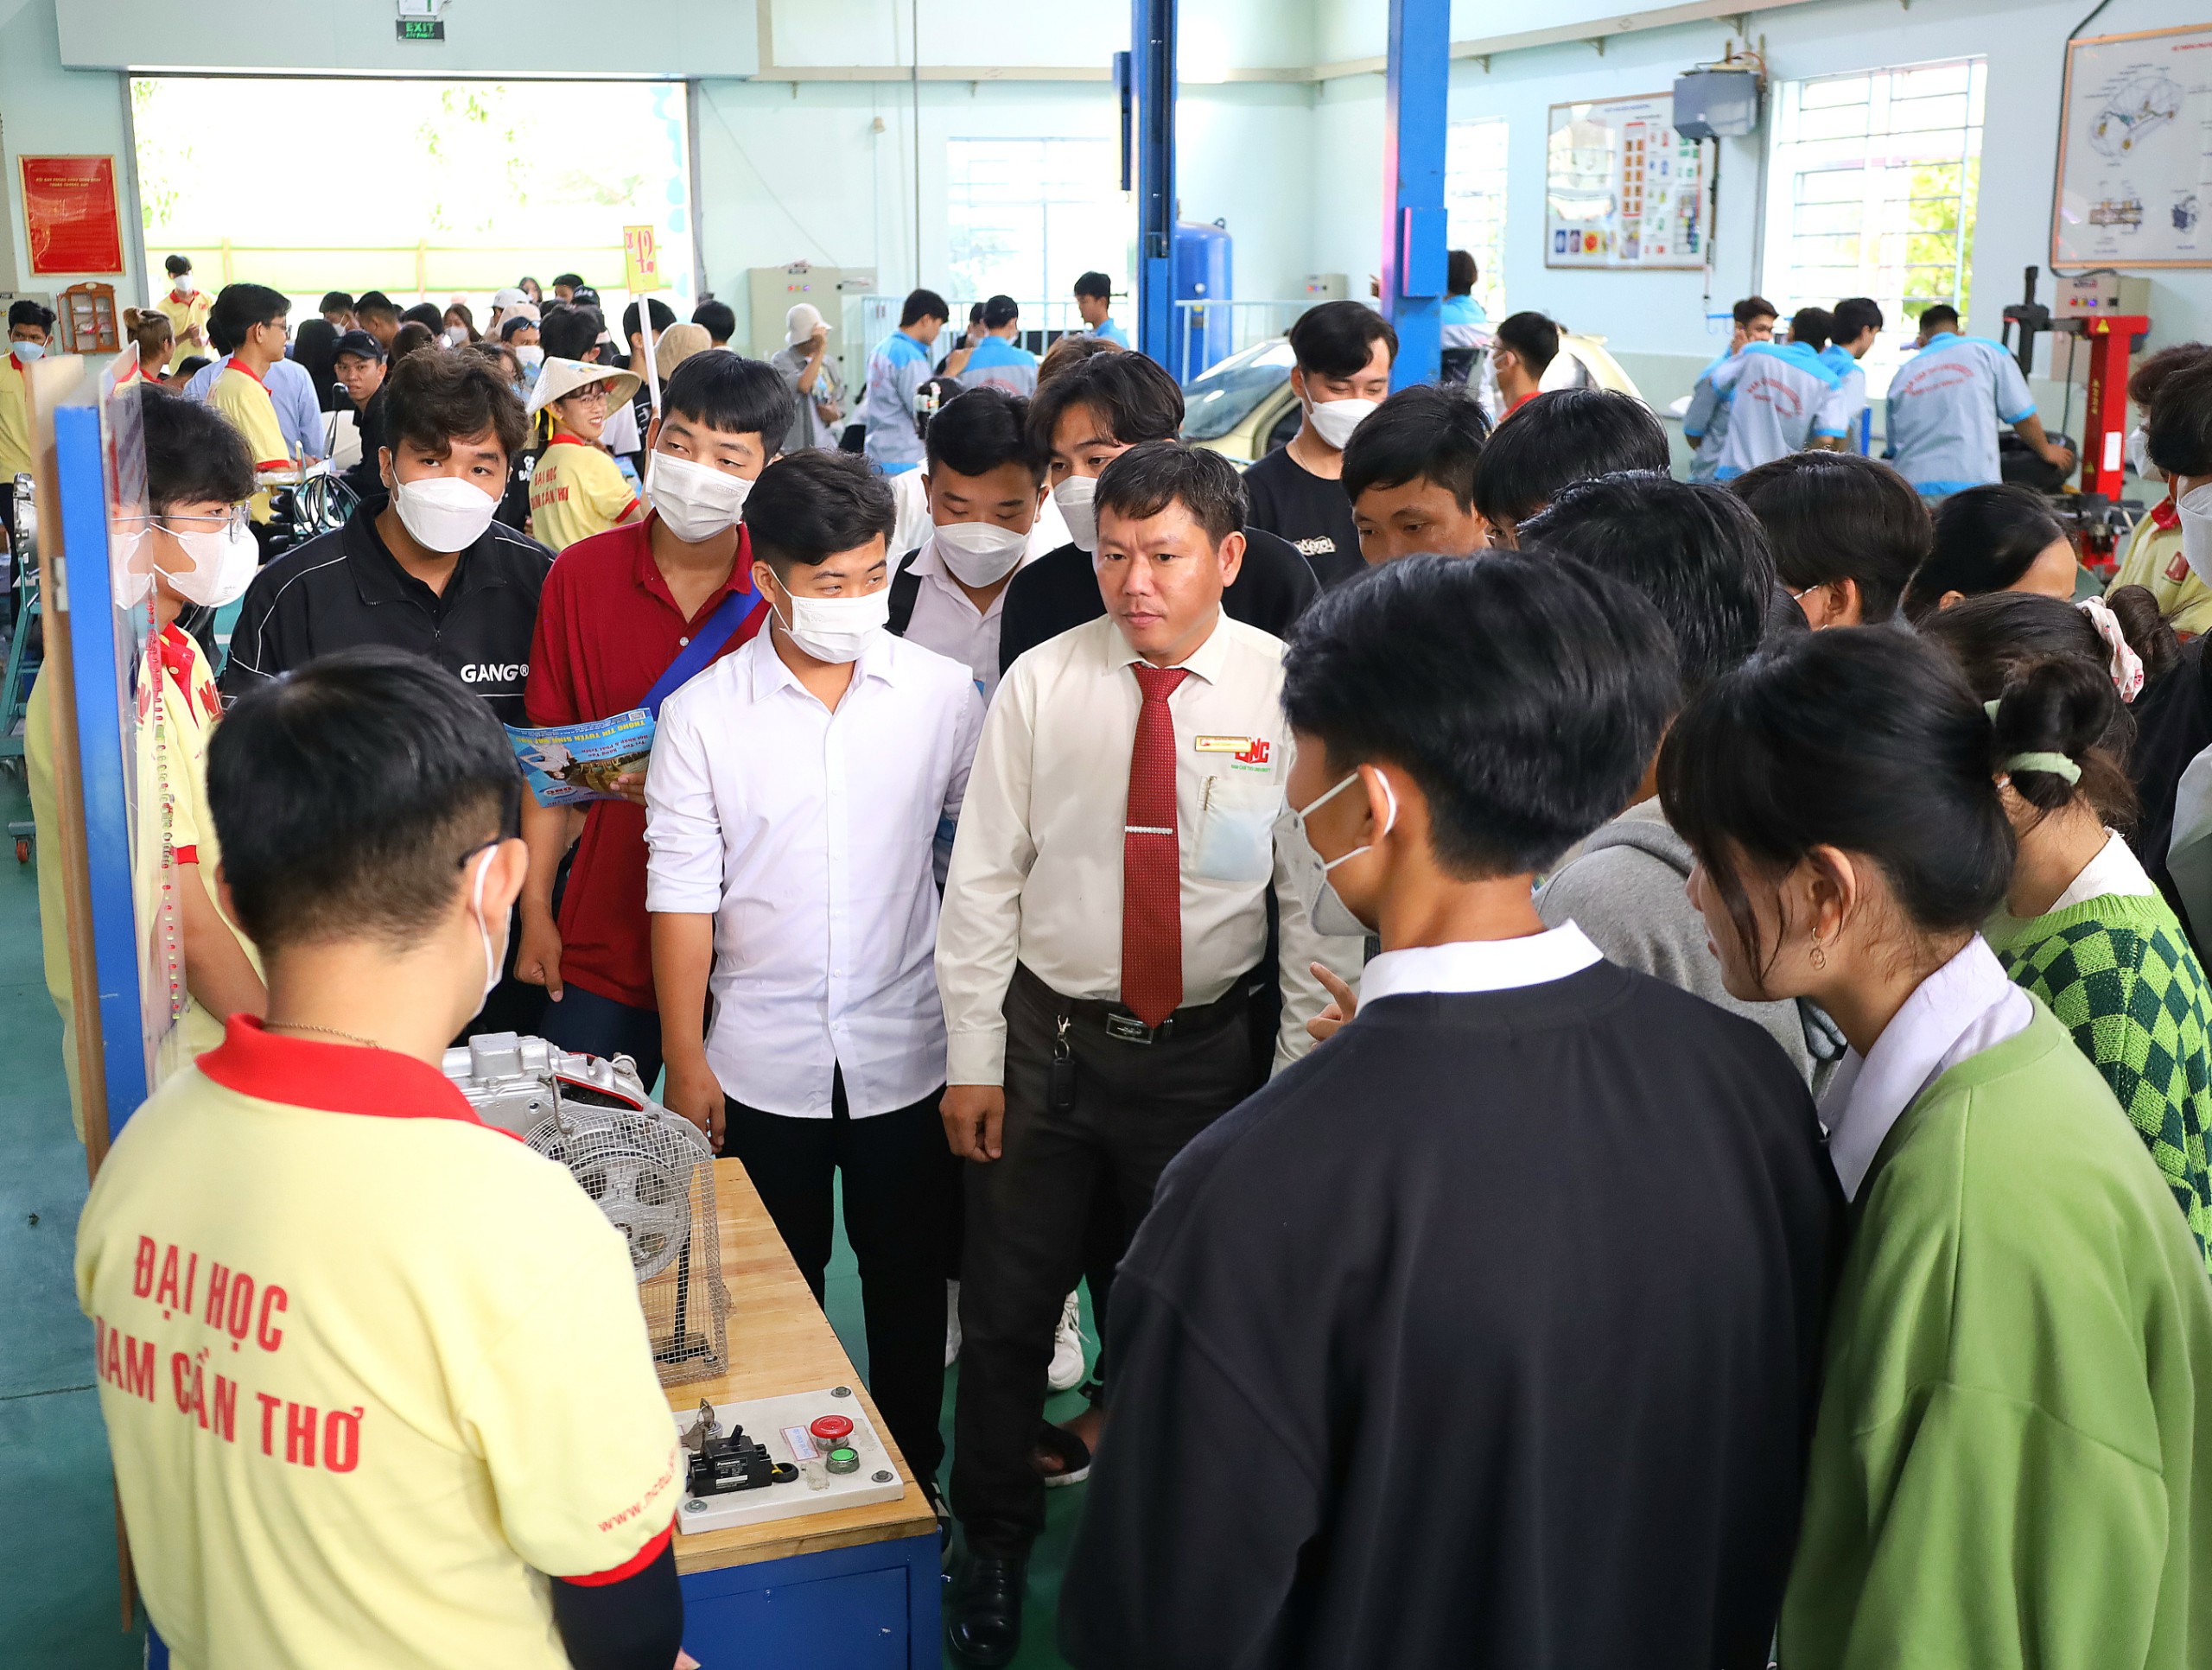 Các em học sinh tham quan xưởng ô tô tại Trường Đại học Nam Cần Thơ.